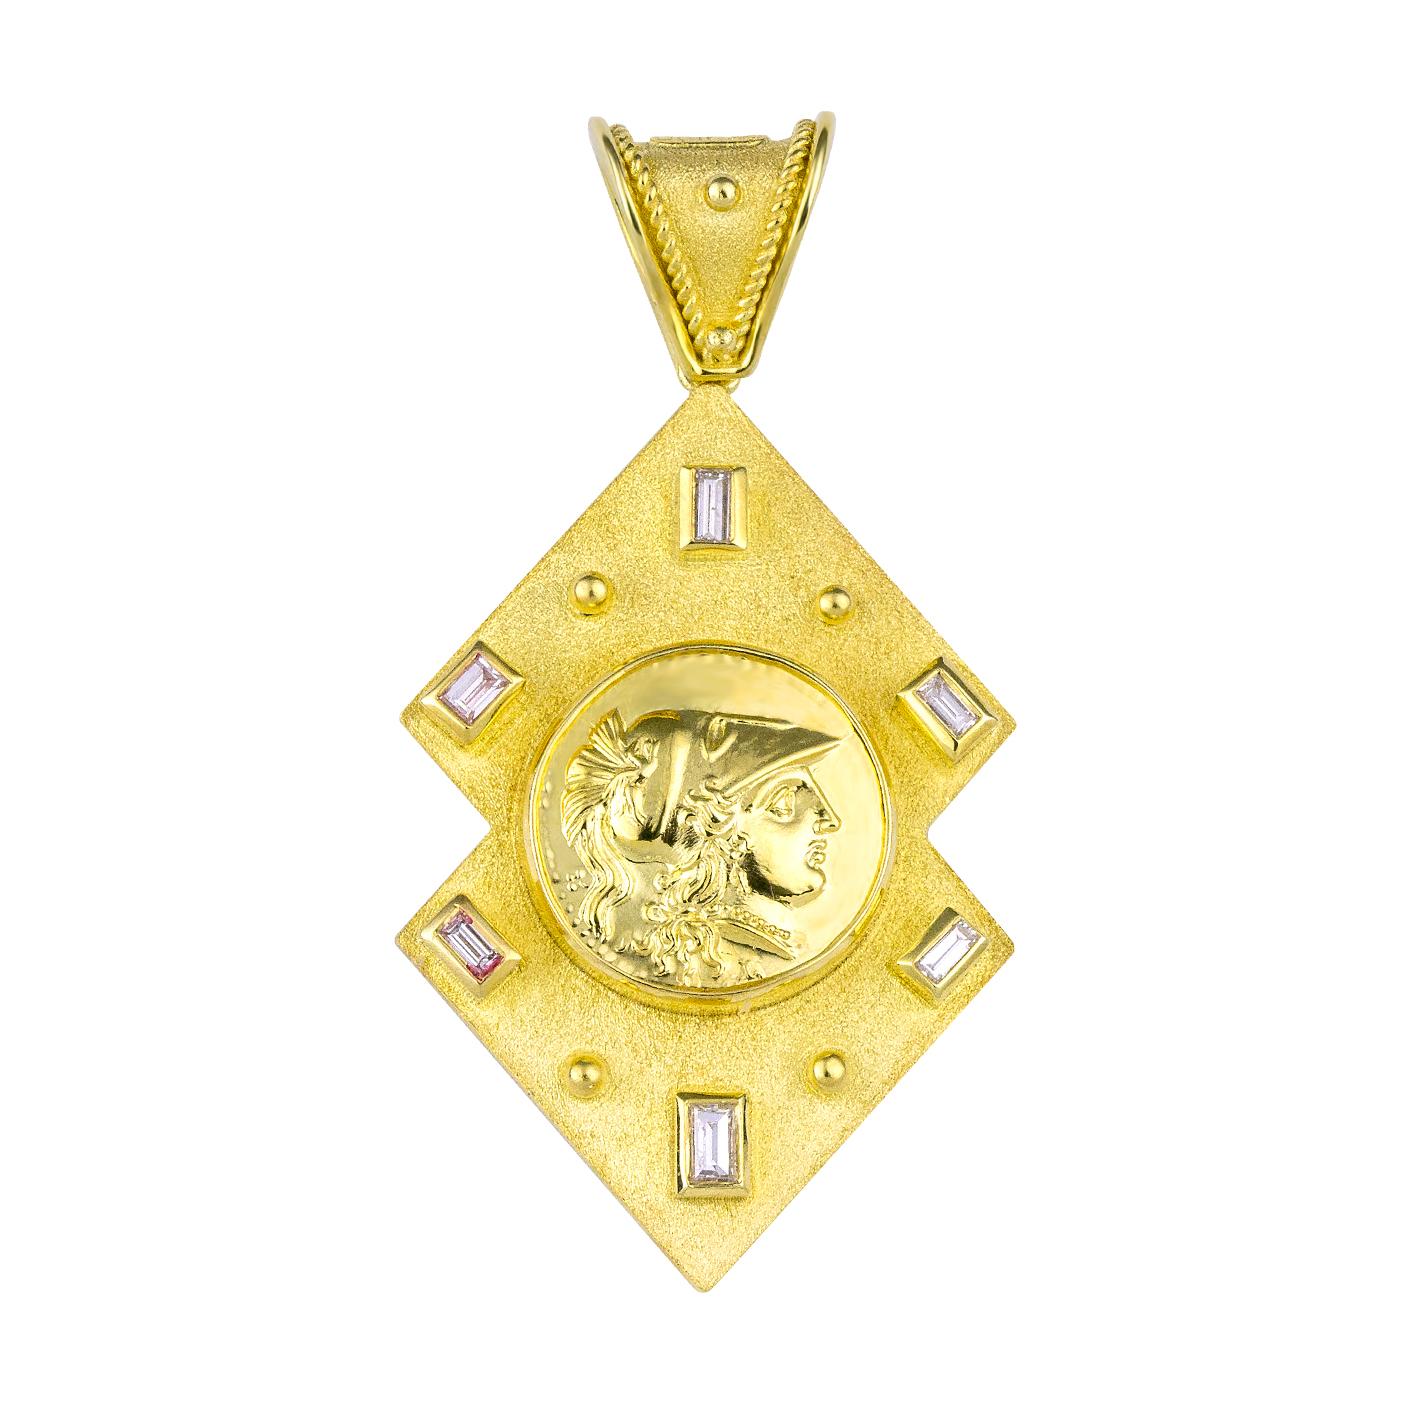 Le pendentif enhancer de S.Georgios est entièrement fabriqué à la main en or jaune et blanc 18 carats sur mesure. Il est décoré au microscope - avec un travail de granulation - des perles et des fils sur les deux côtés. Le fond du pendentif présente